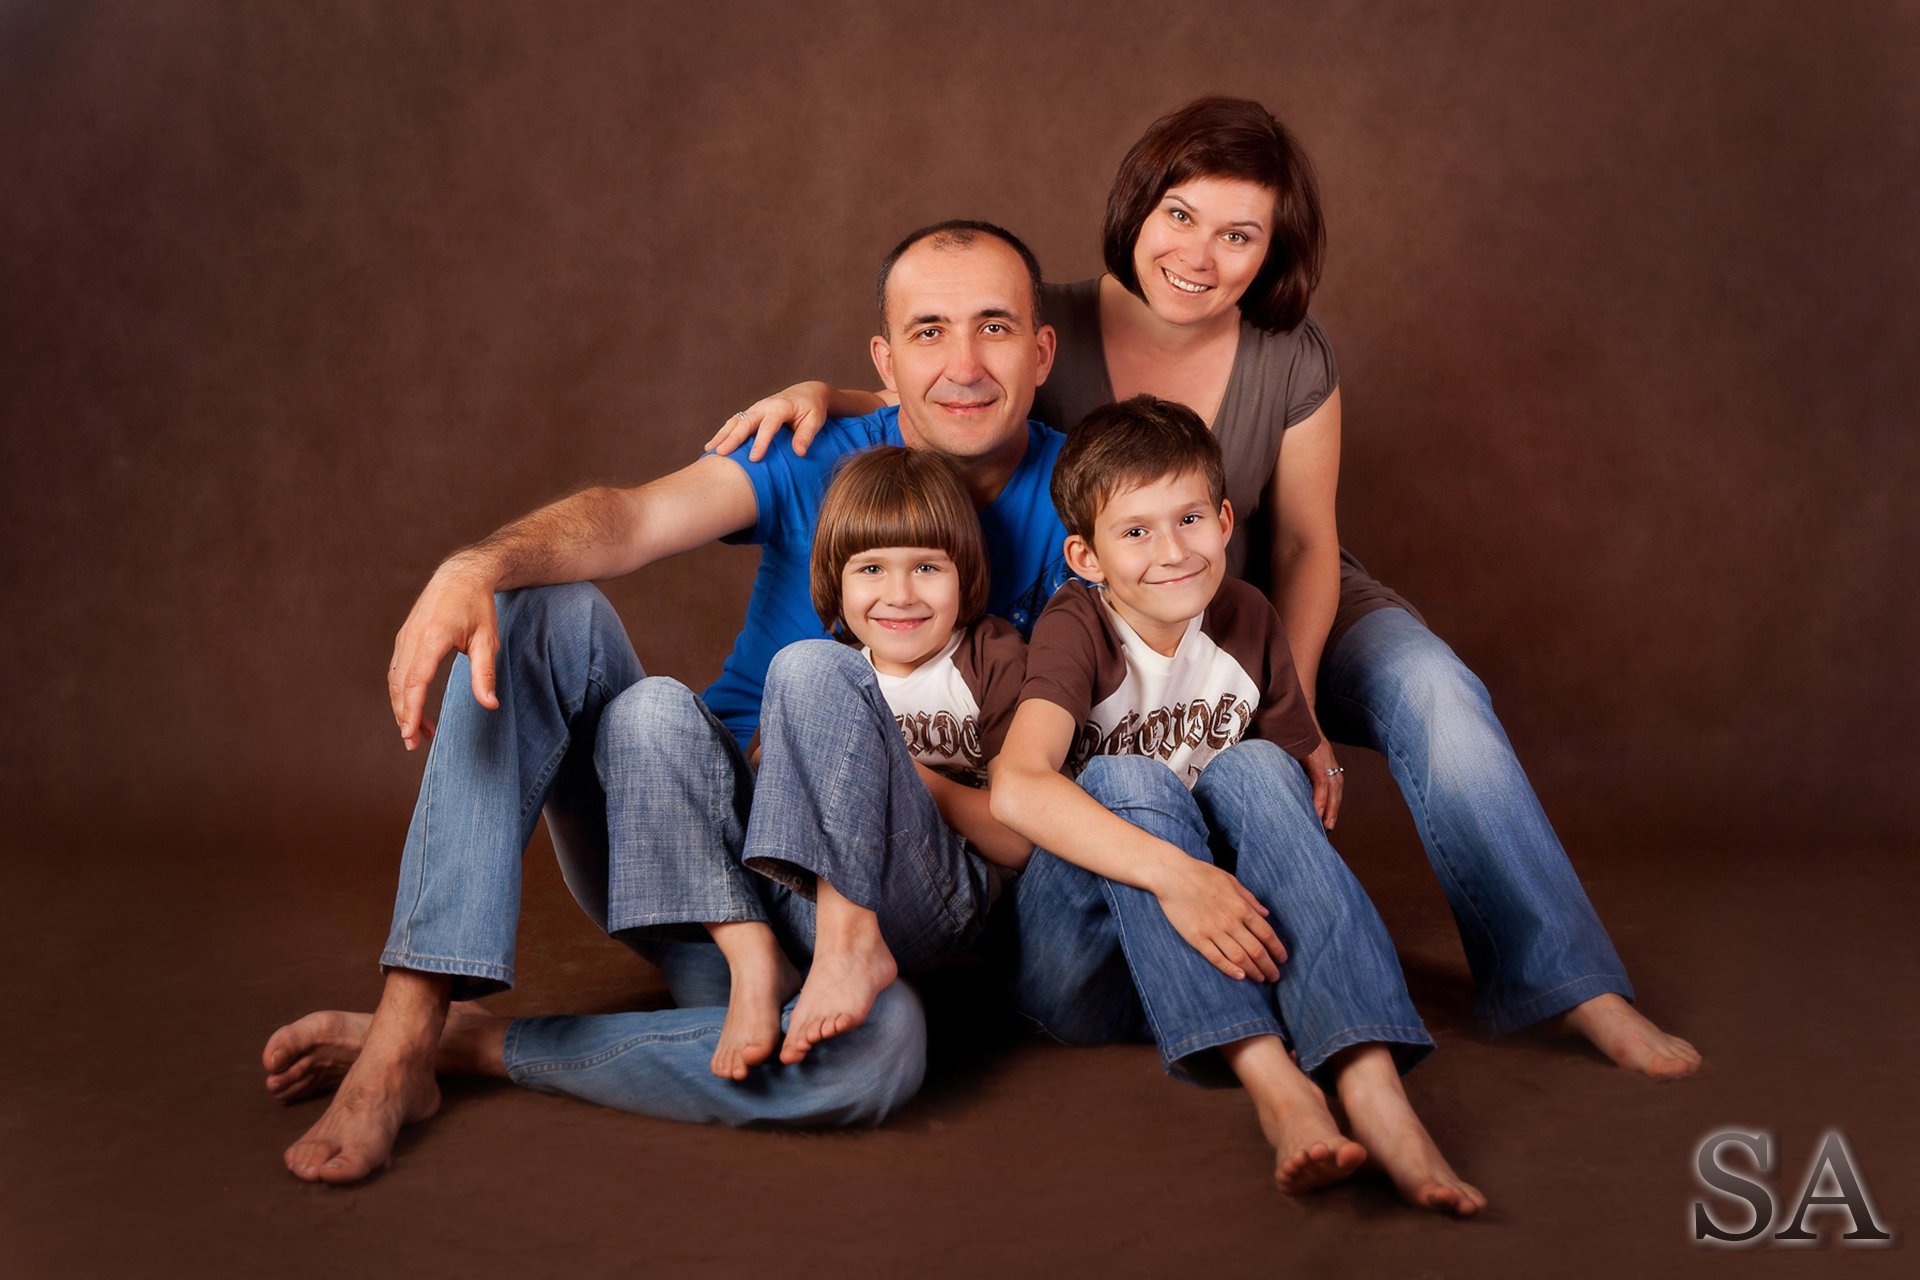 История жизни обычной семьи 33. Семейная фотосессия. Семейный портрет. Интересные семейные фотосессии. Идеи для фотосессии в студии.